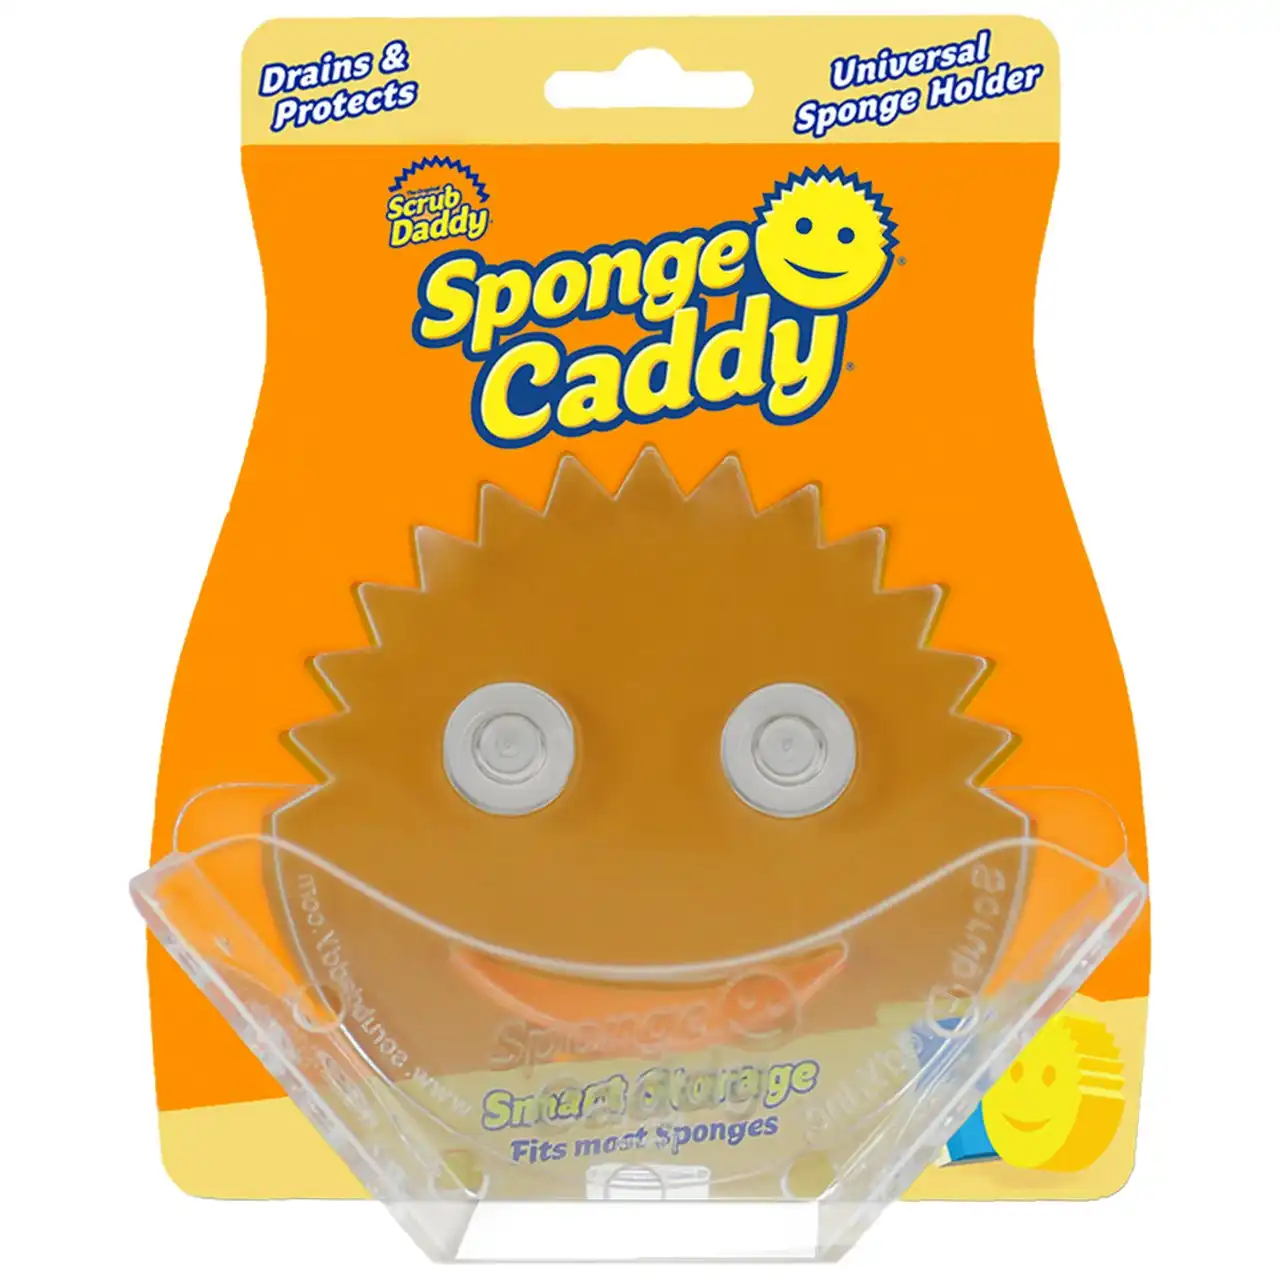 Scrub Daddy - Sponge Caddy Organiser